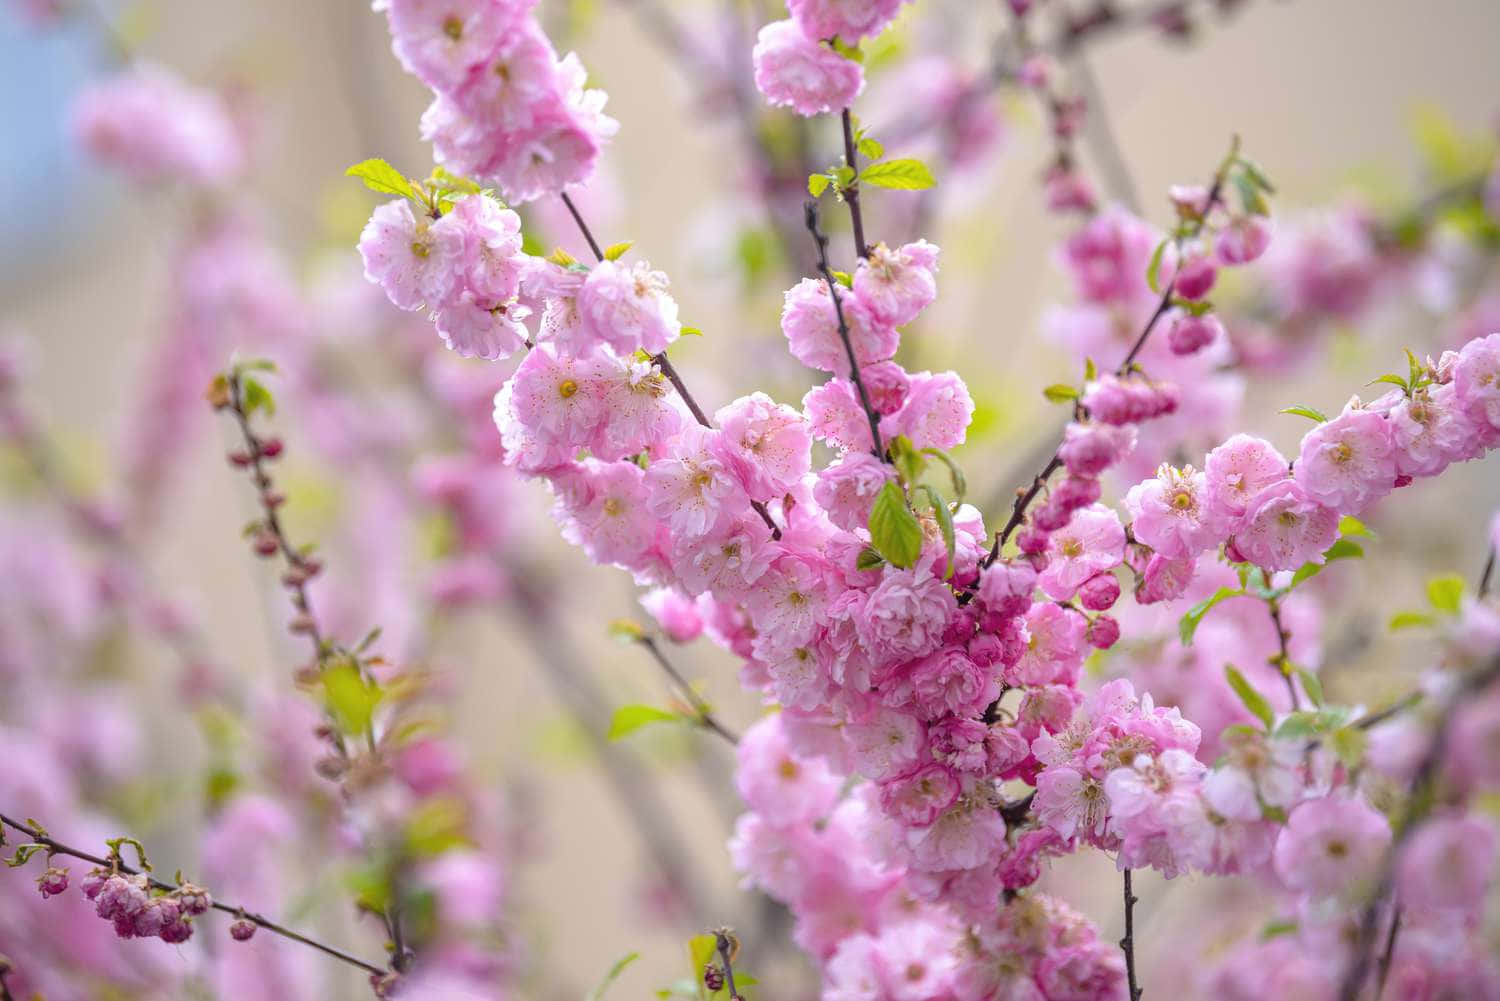 Blossom Bliss - An enchanting Flower Tree in Full Bloom Wallpaper